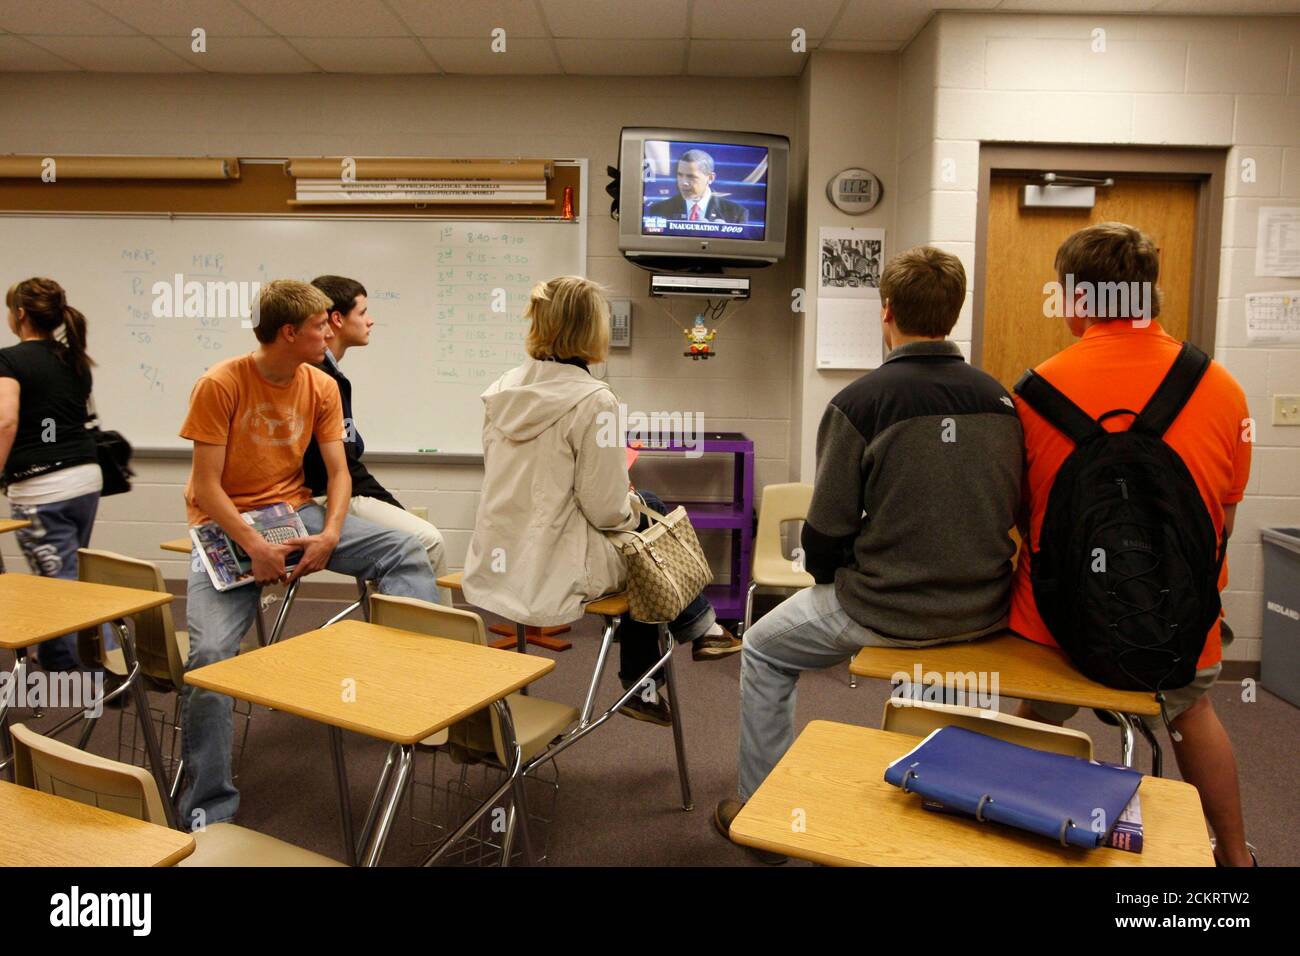 Midland, TX 20 janvier 2009: Les étudiants du gouvernement et de l'histoire à la Midland High School regardent l'inauguration du président Barack Obama à la télévision pendant la classe mardi. Pour usage éditorial uniquement. ©Bob Daemmrich Banque D'Images